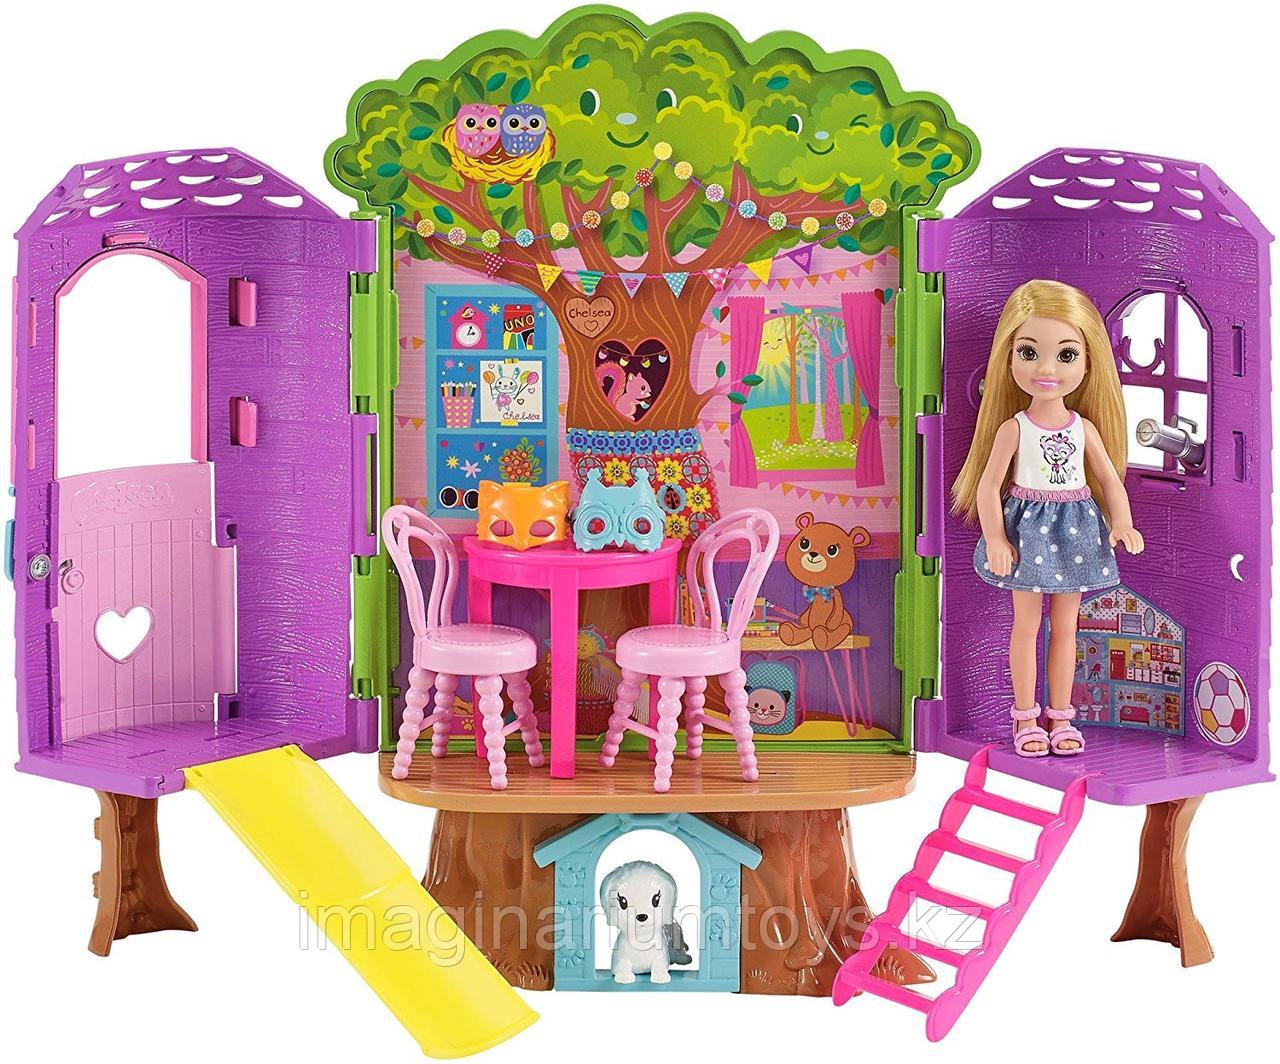 Mattel Barbie игровой набор Домик Челси на дереве